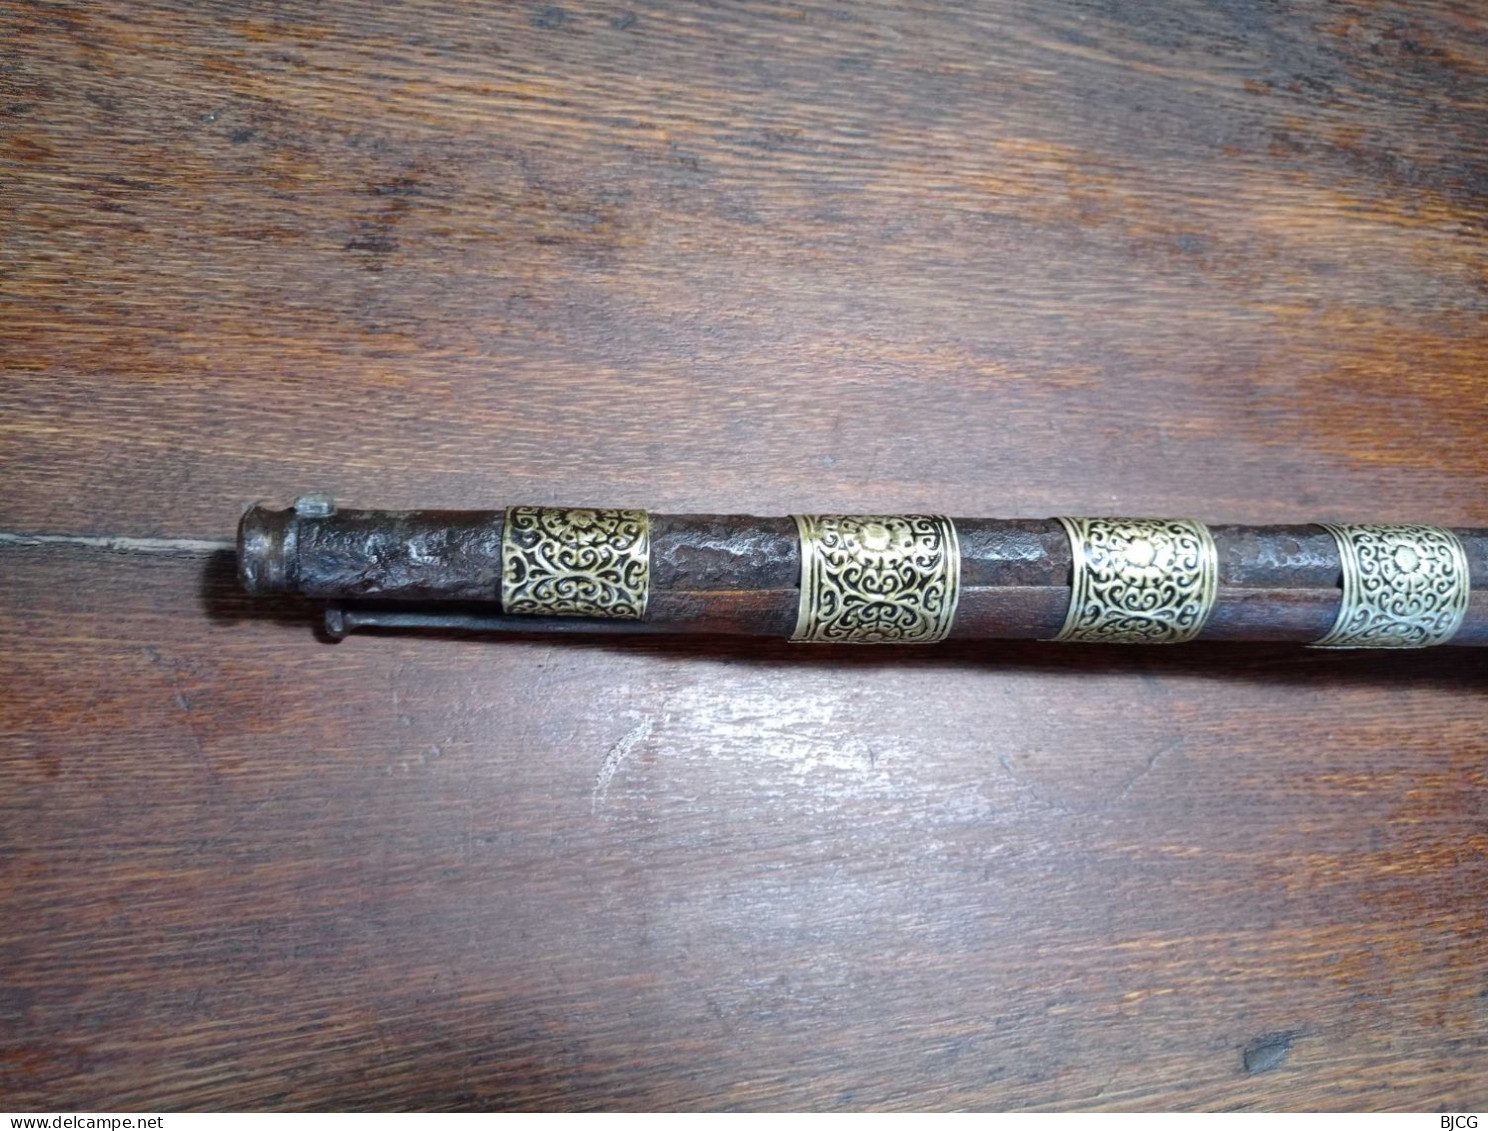 Petit fusil à silex oriental de type Moukhala - XIX ème siècle - Caucase ou Maghreb - EM